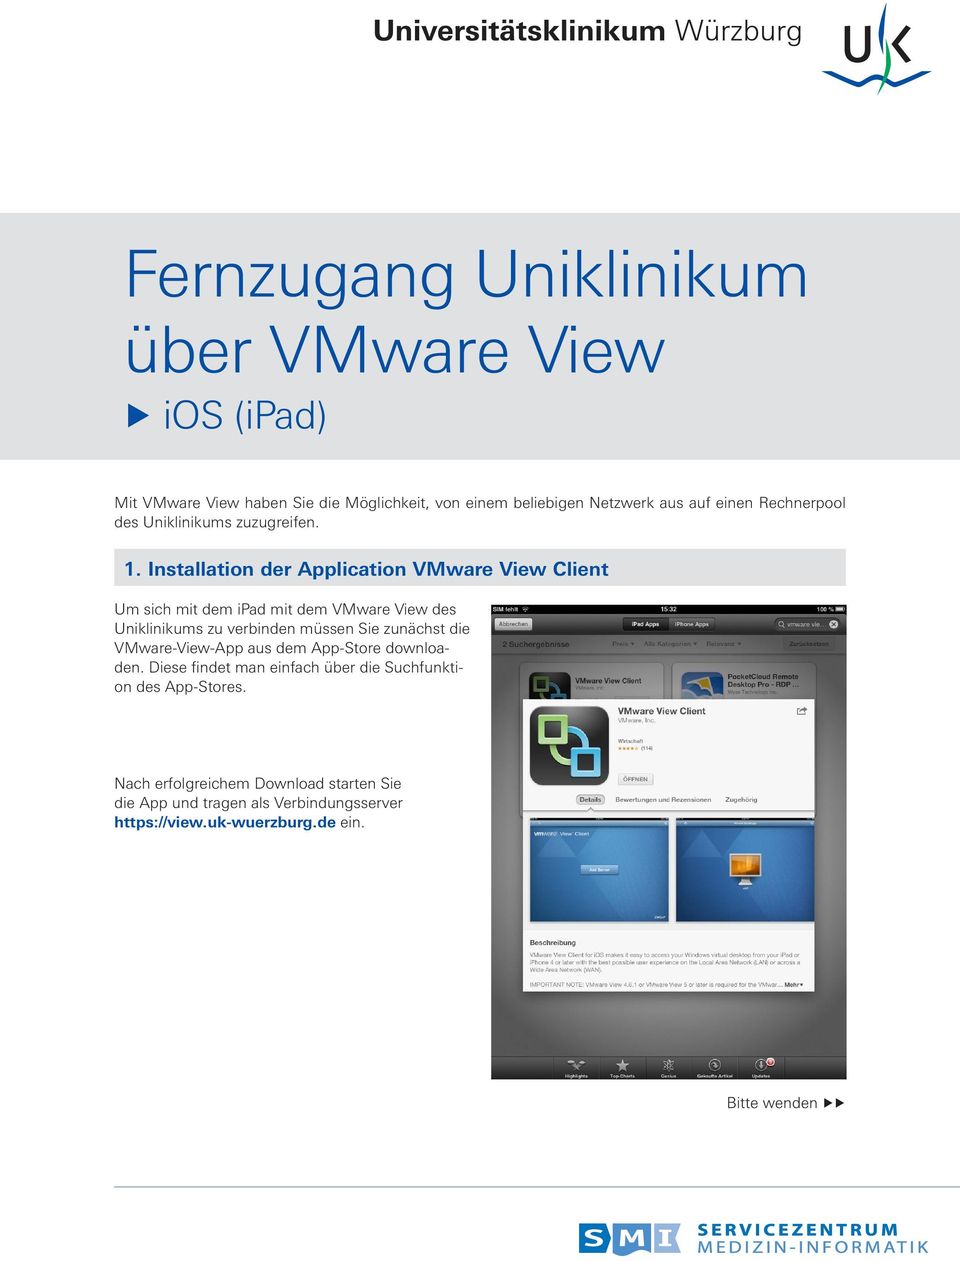 Installation der Application VMware View Client Um sich mit dem ipad mit dem VMware View des Uniklinikums zu verbinden müssen Sie zunächst